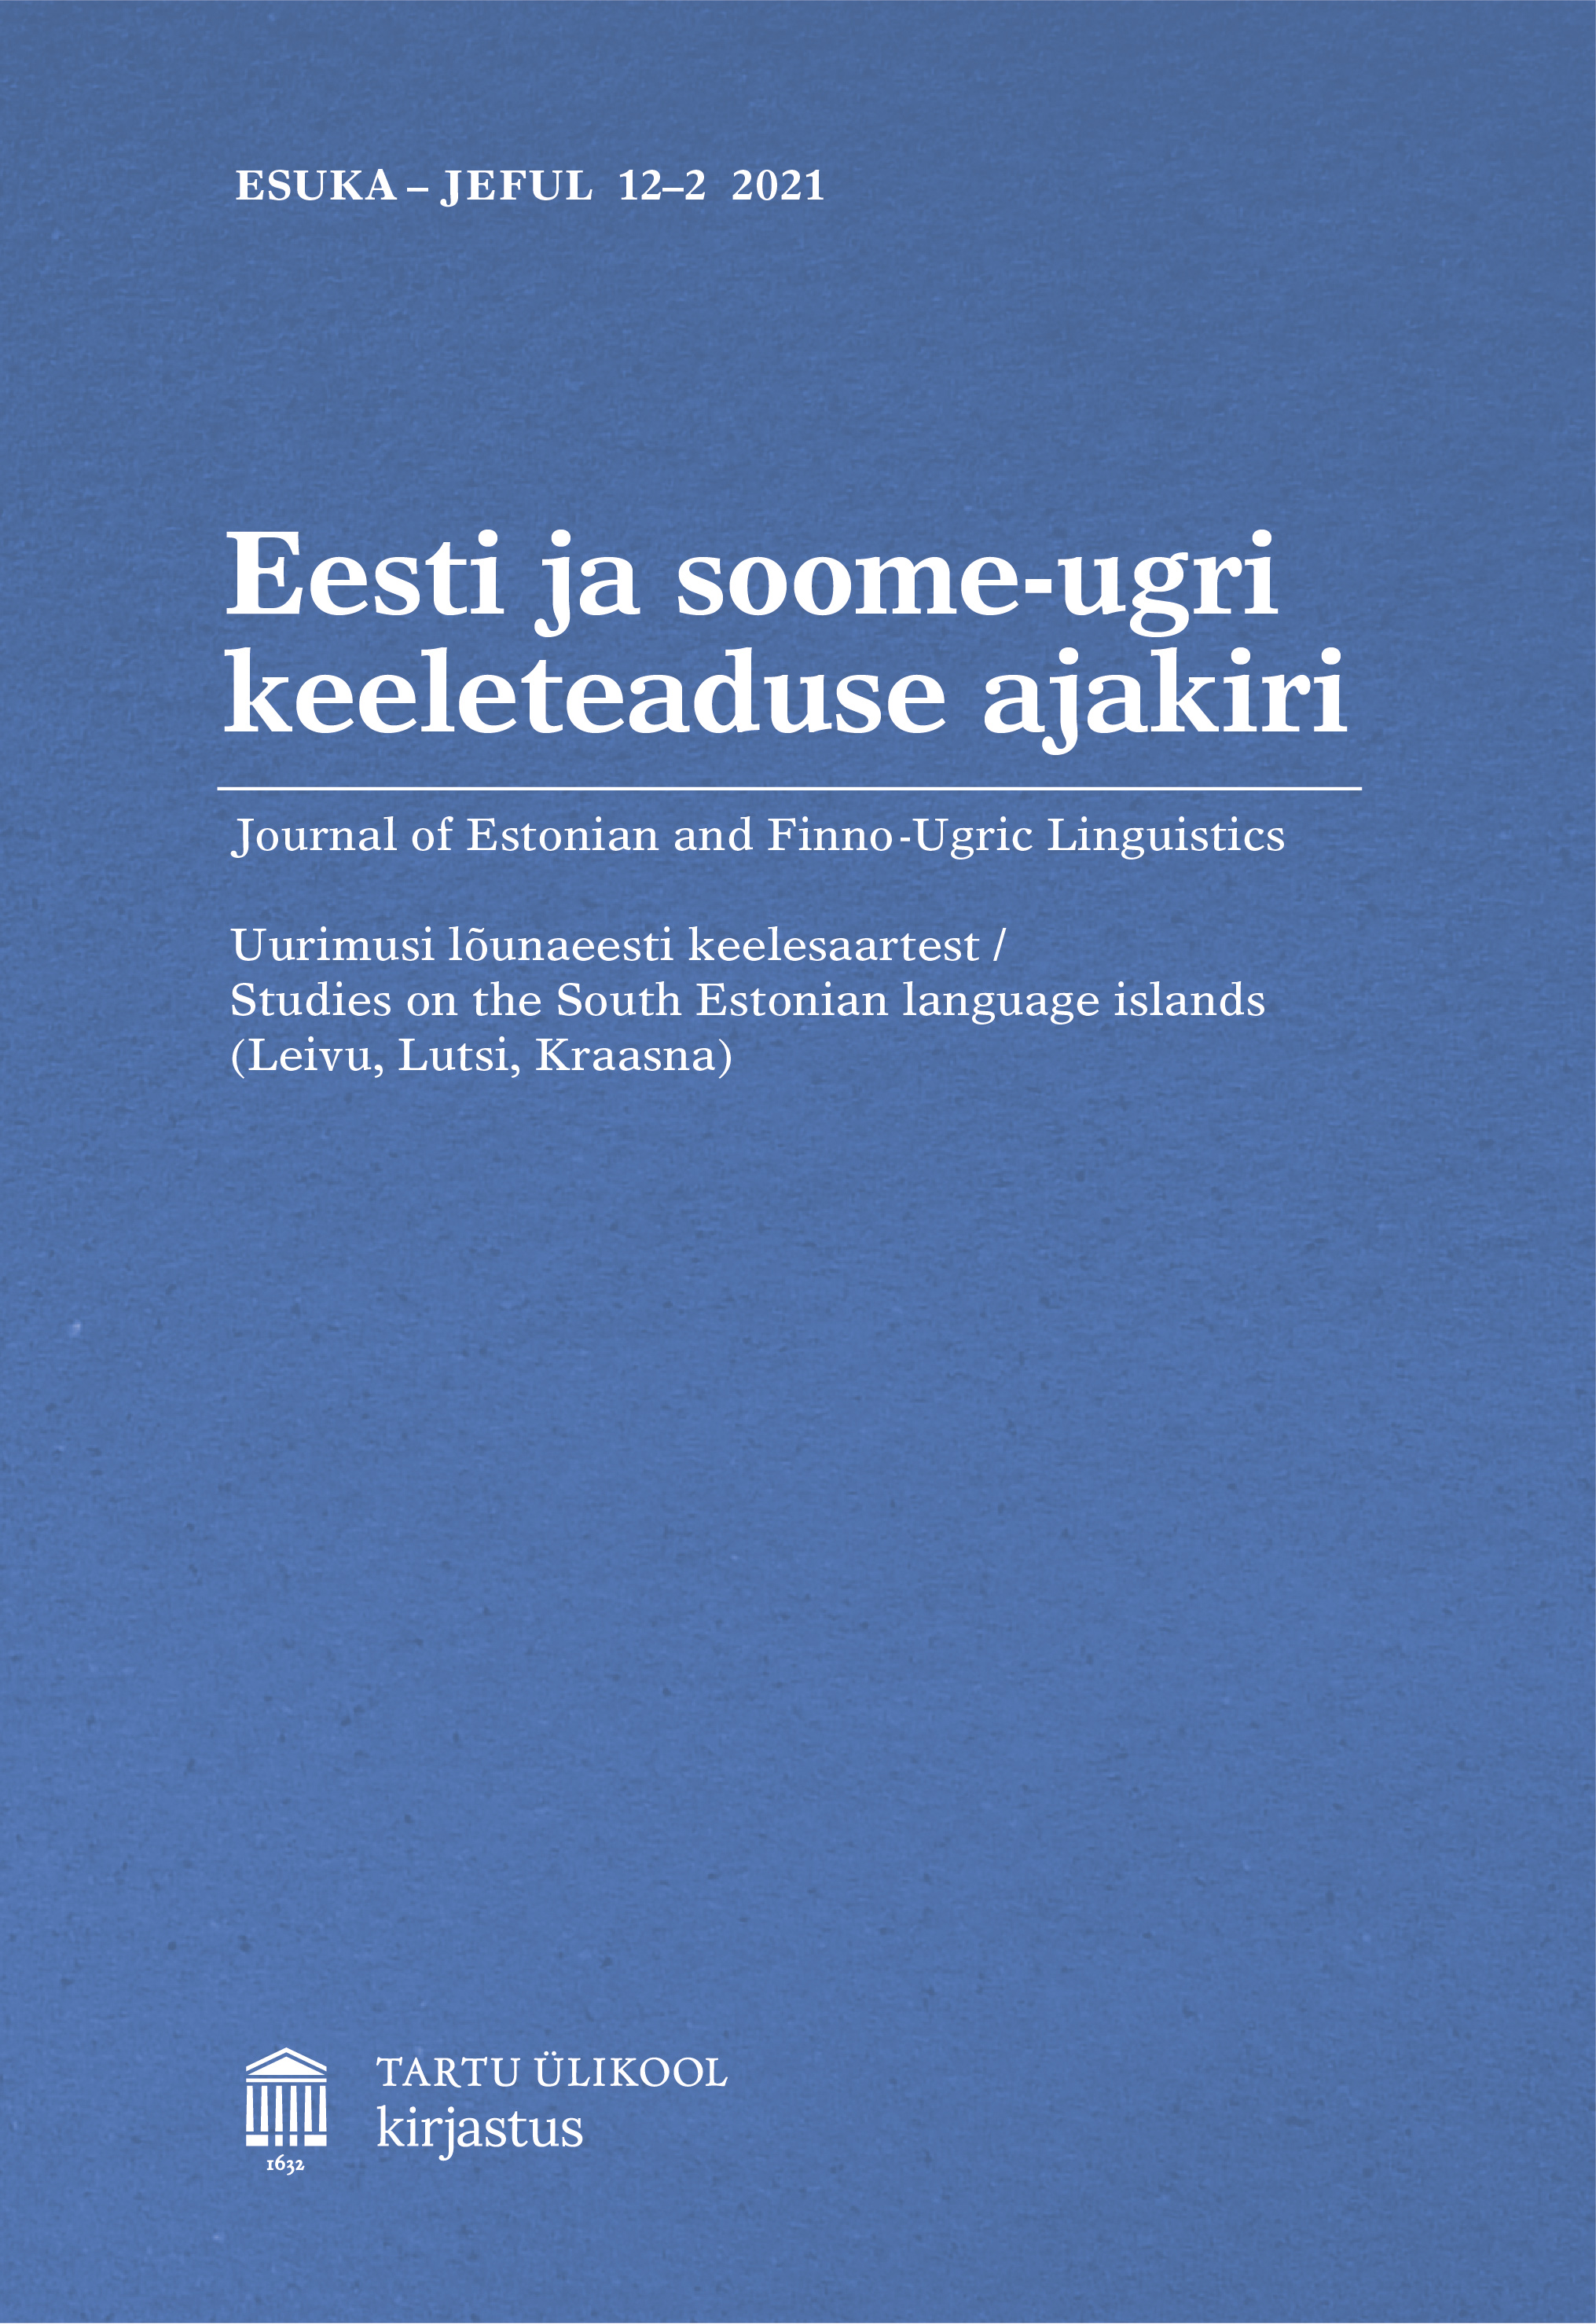 ESUKA 12-2 cover image